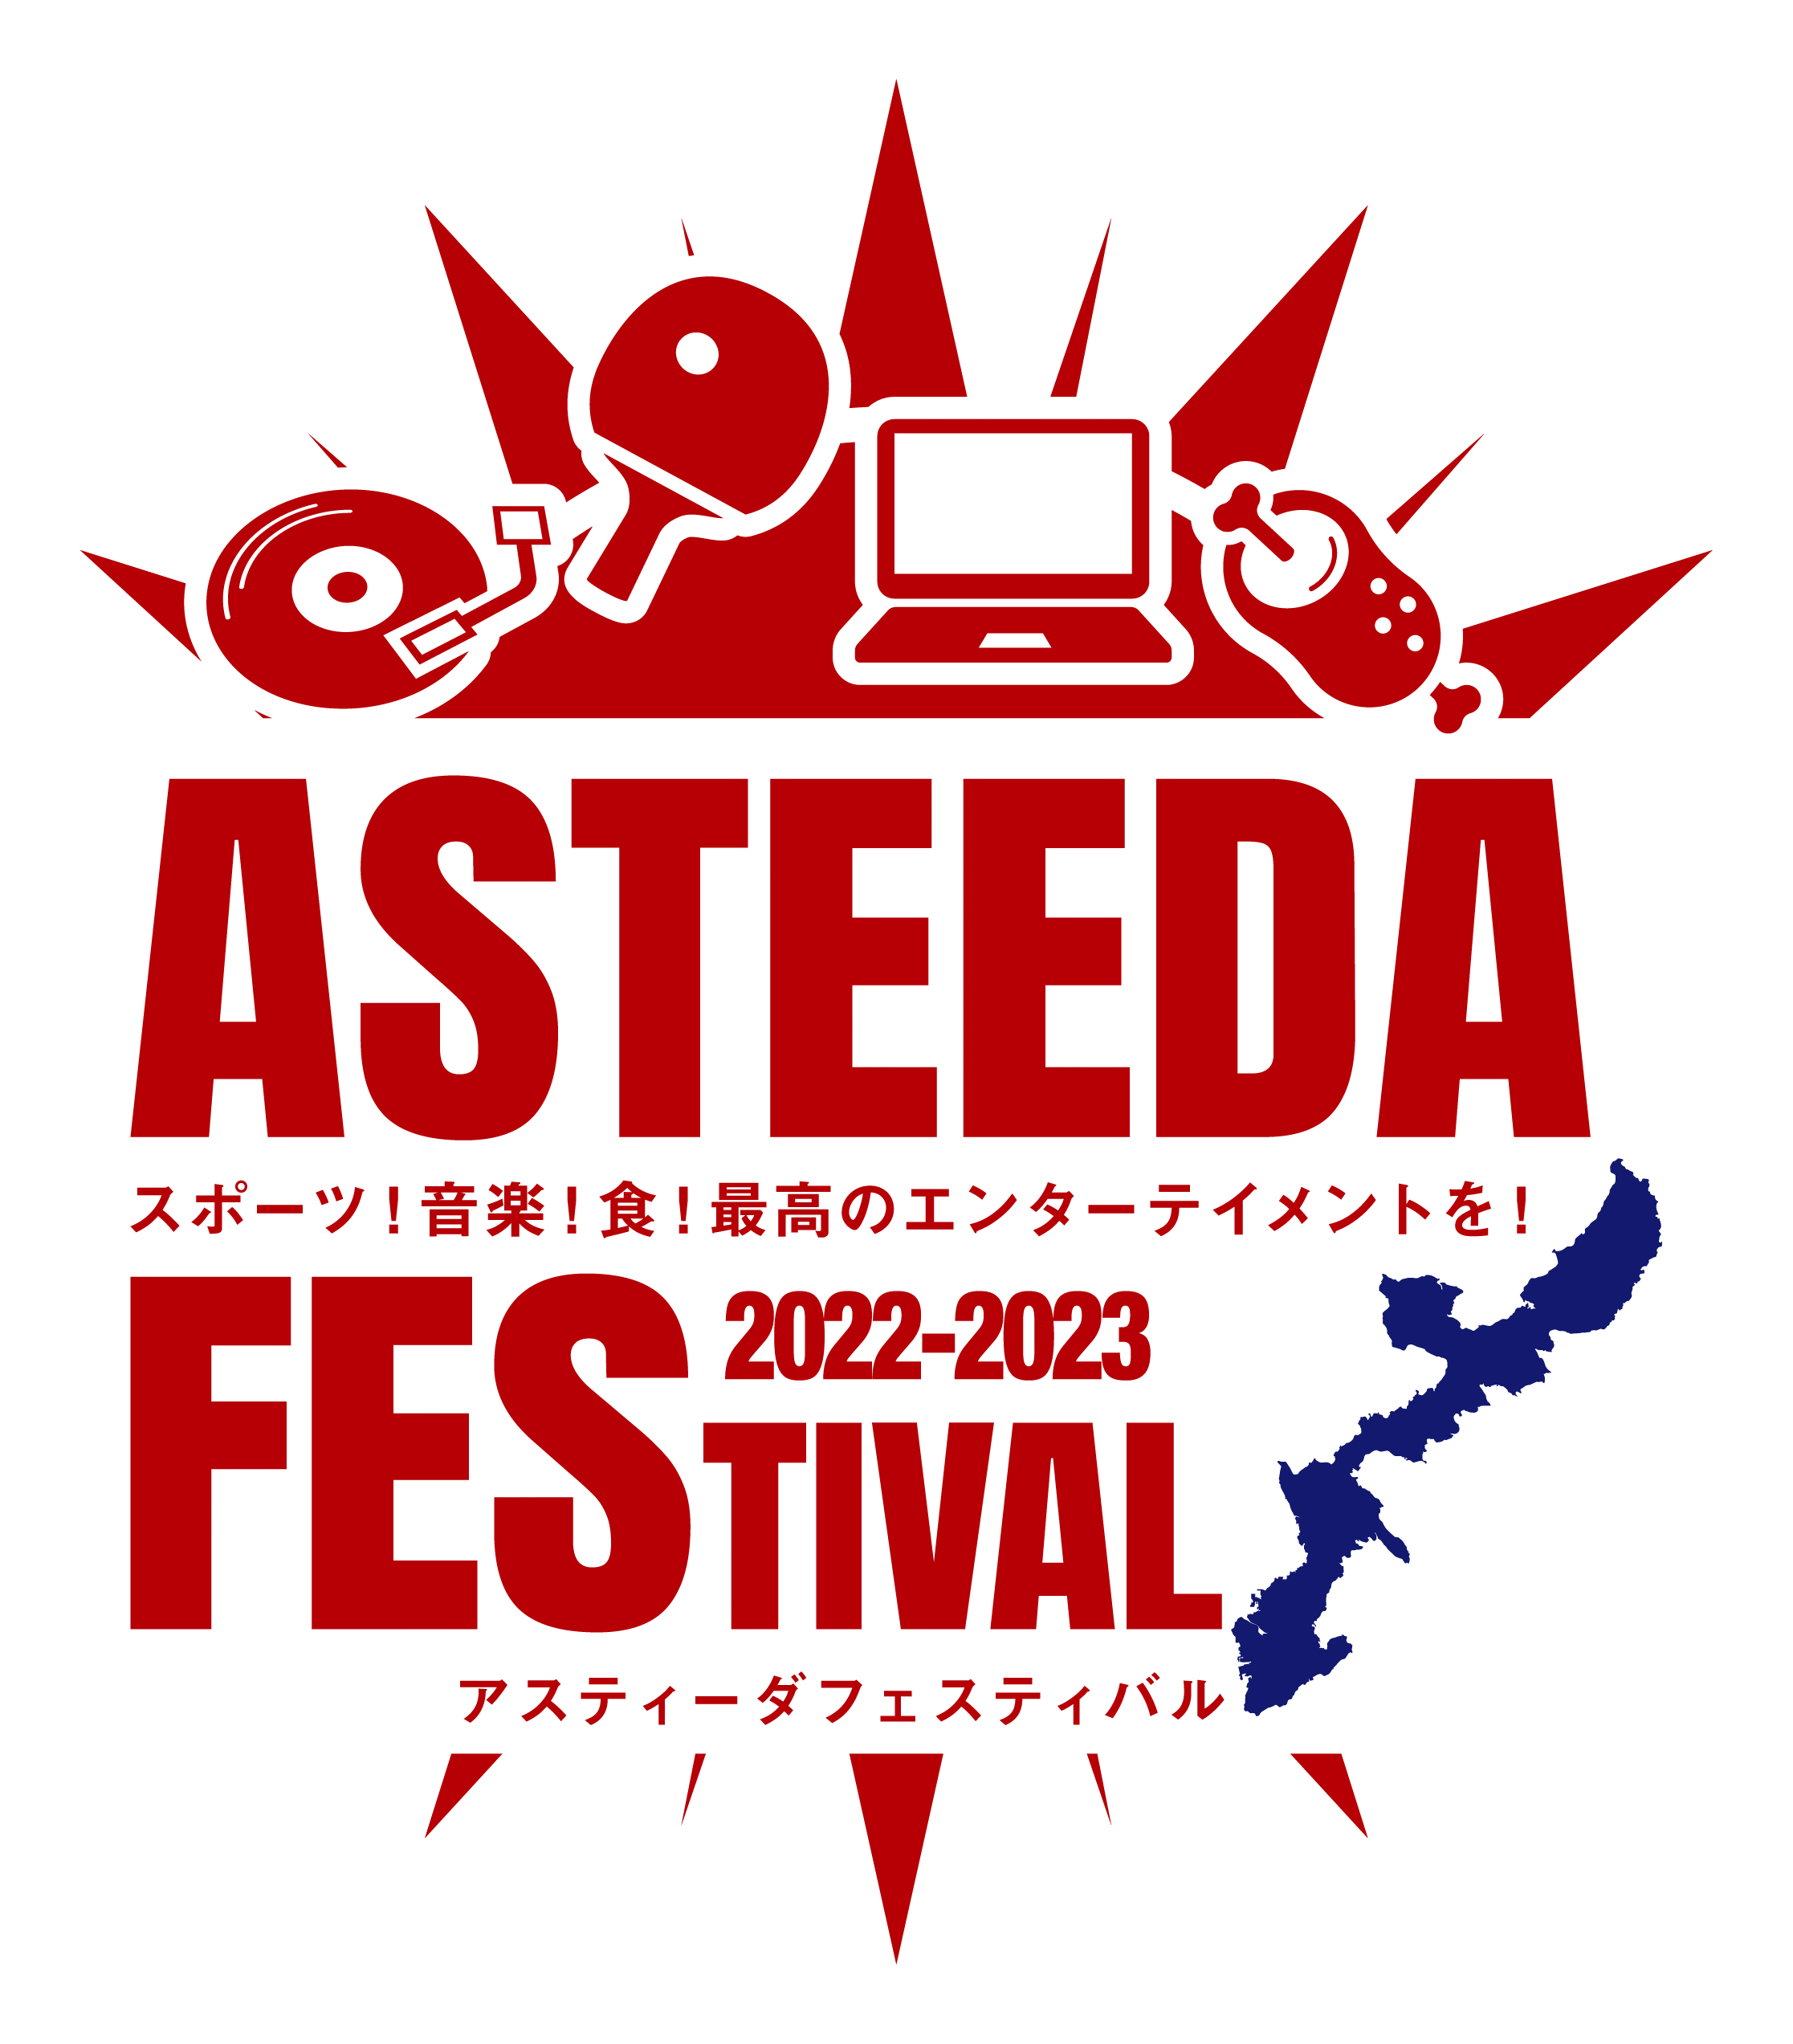 アスティーダフェスティバル2023